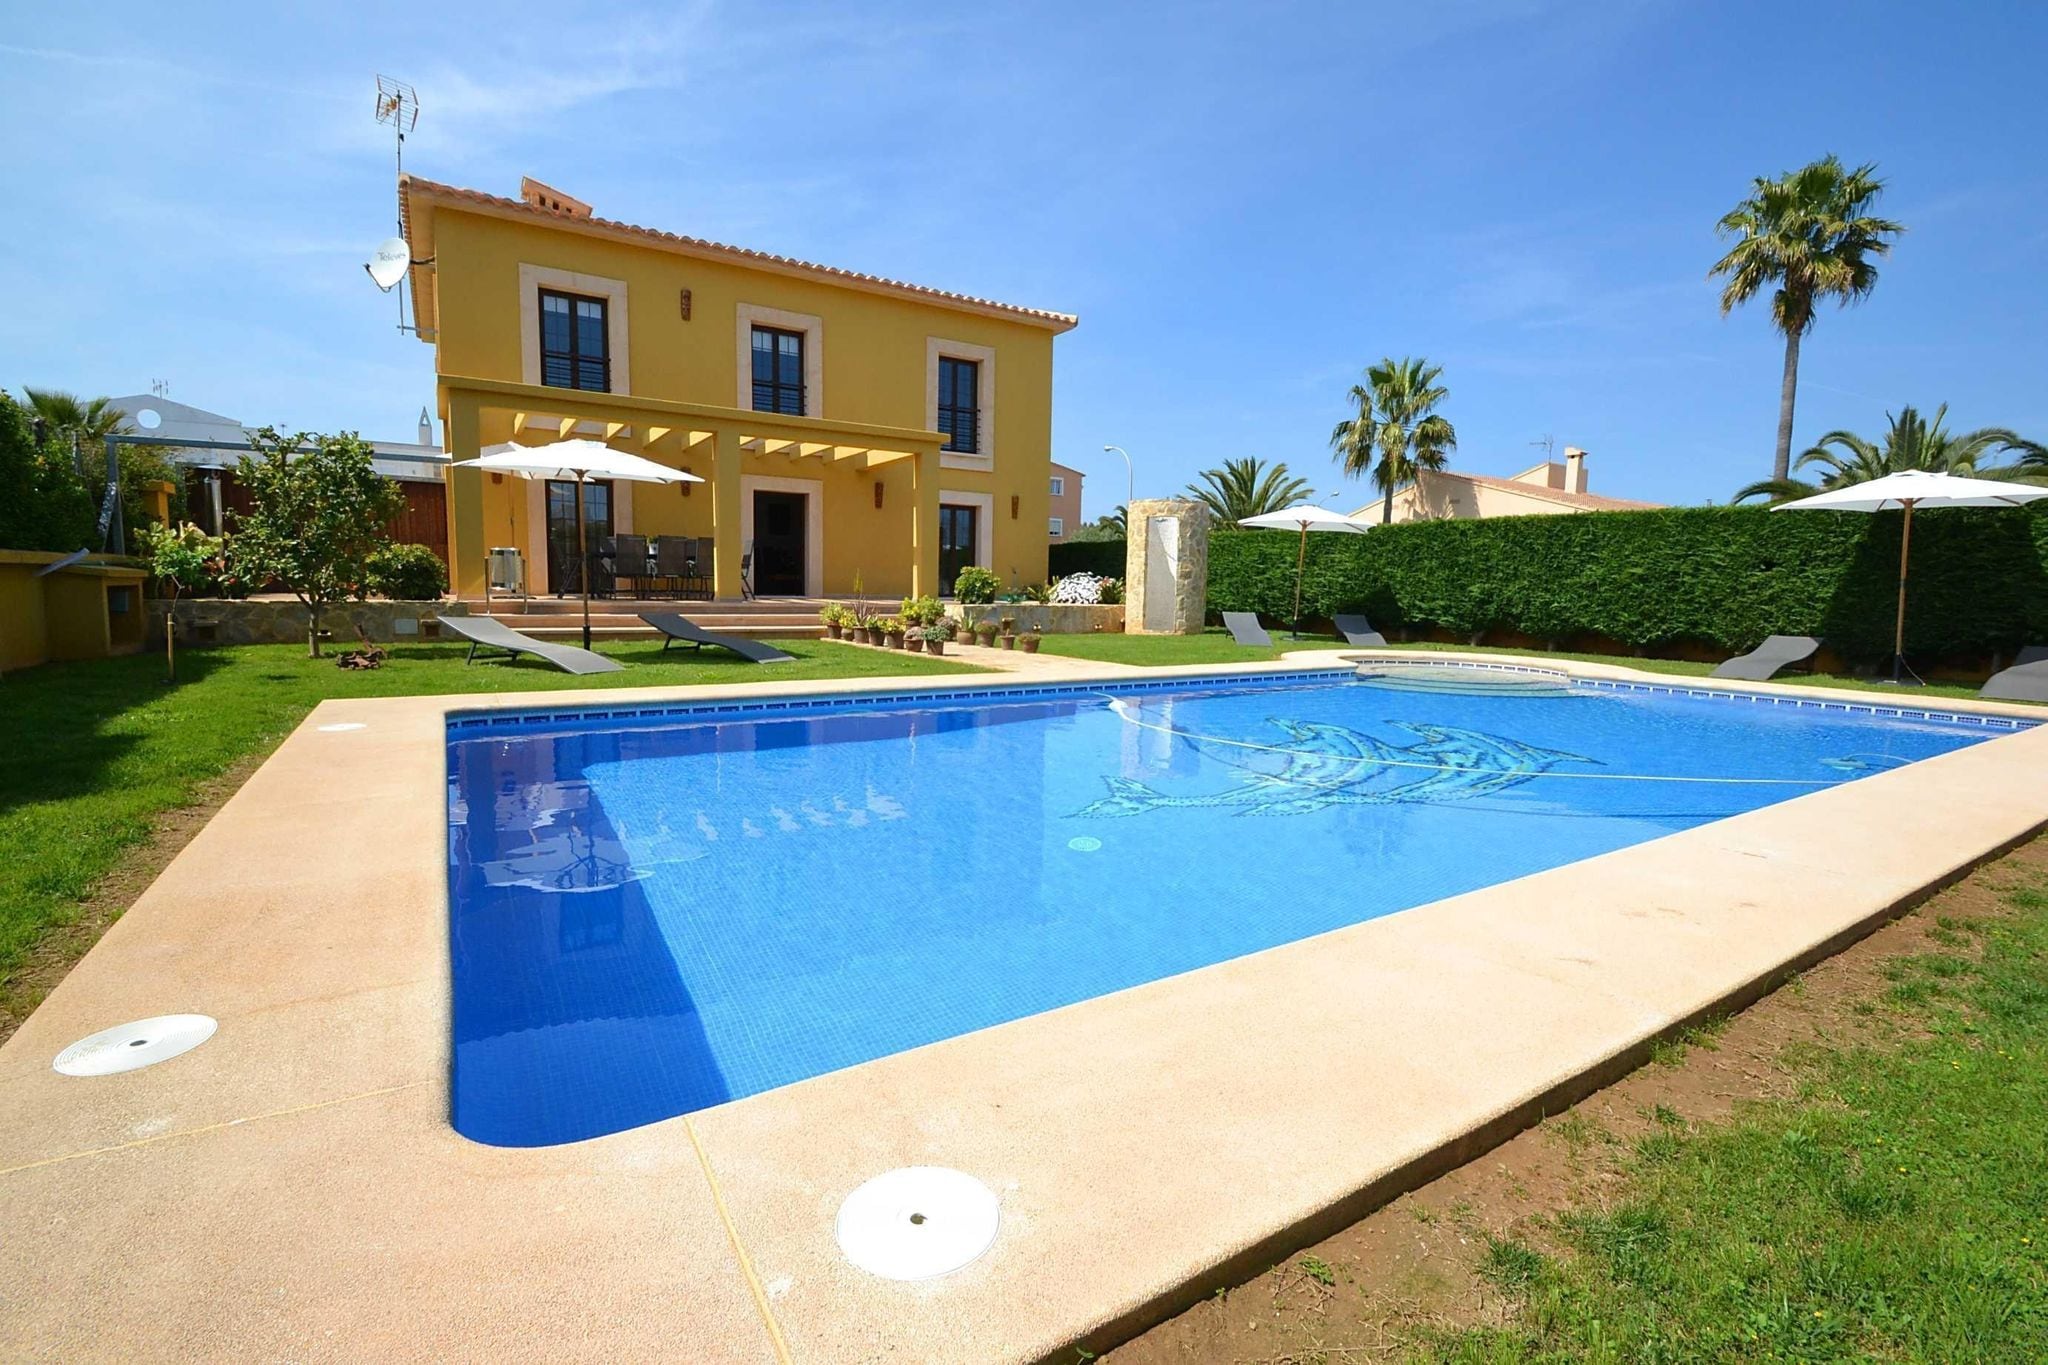 Villa confortable pour 8 personnes avec piscine située près de la plage de sable